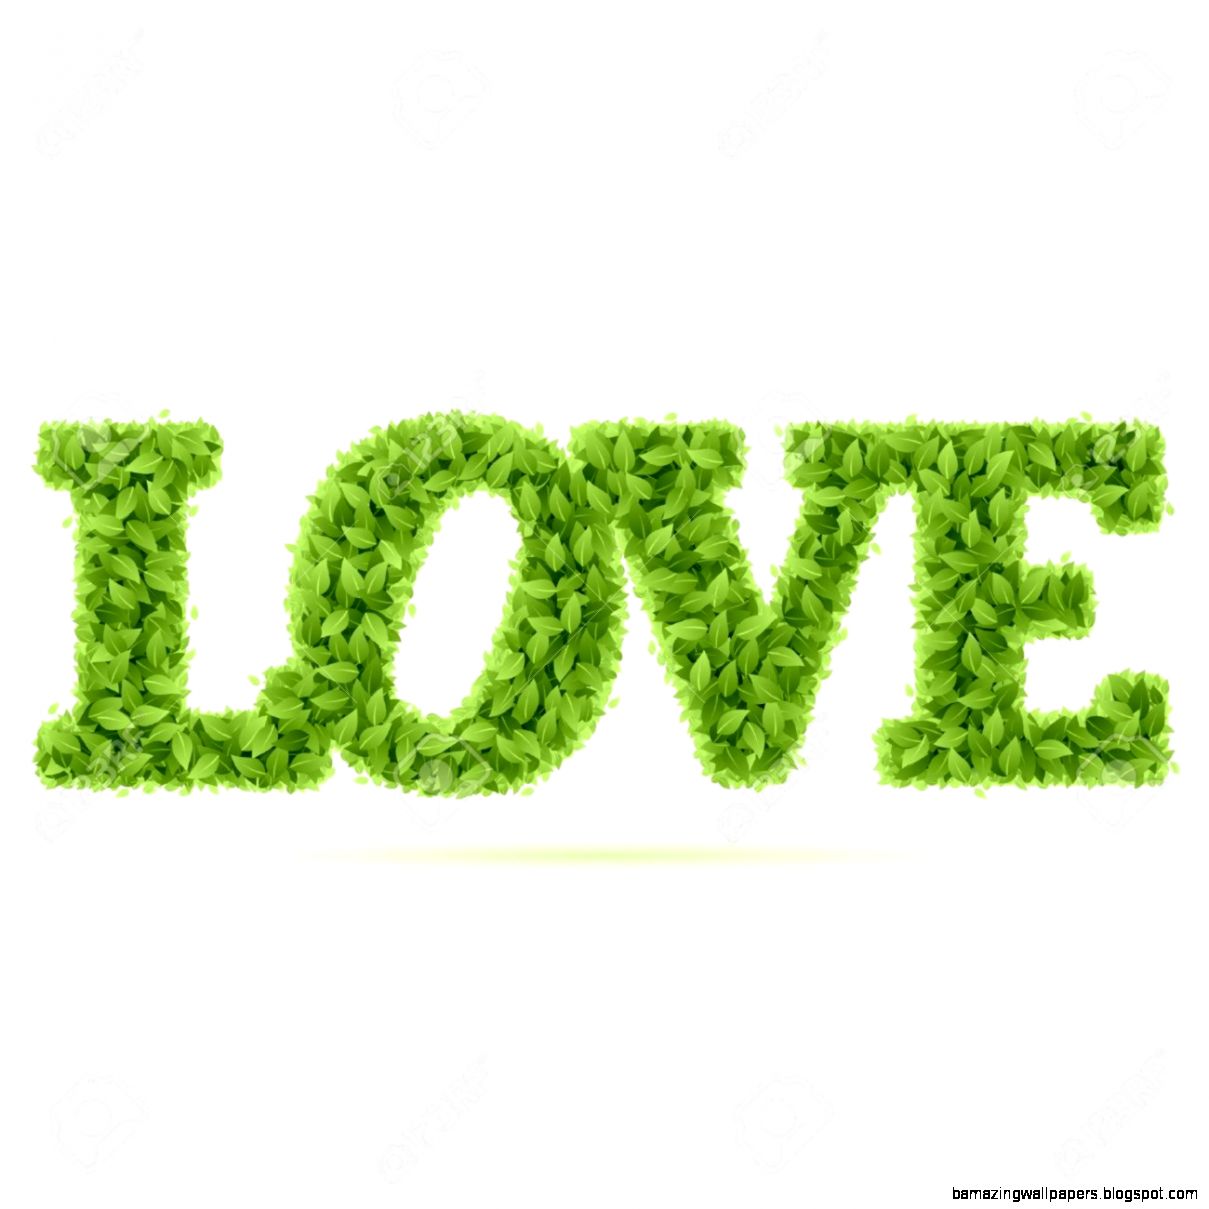 Текст в зеленой чаще. Green слово. I Love you зелёный. Слово i Love you в зеленом цвете. Лова зеленые.